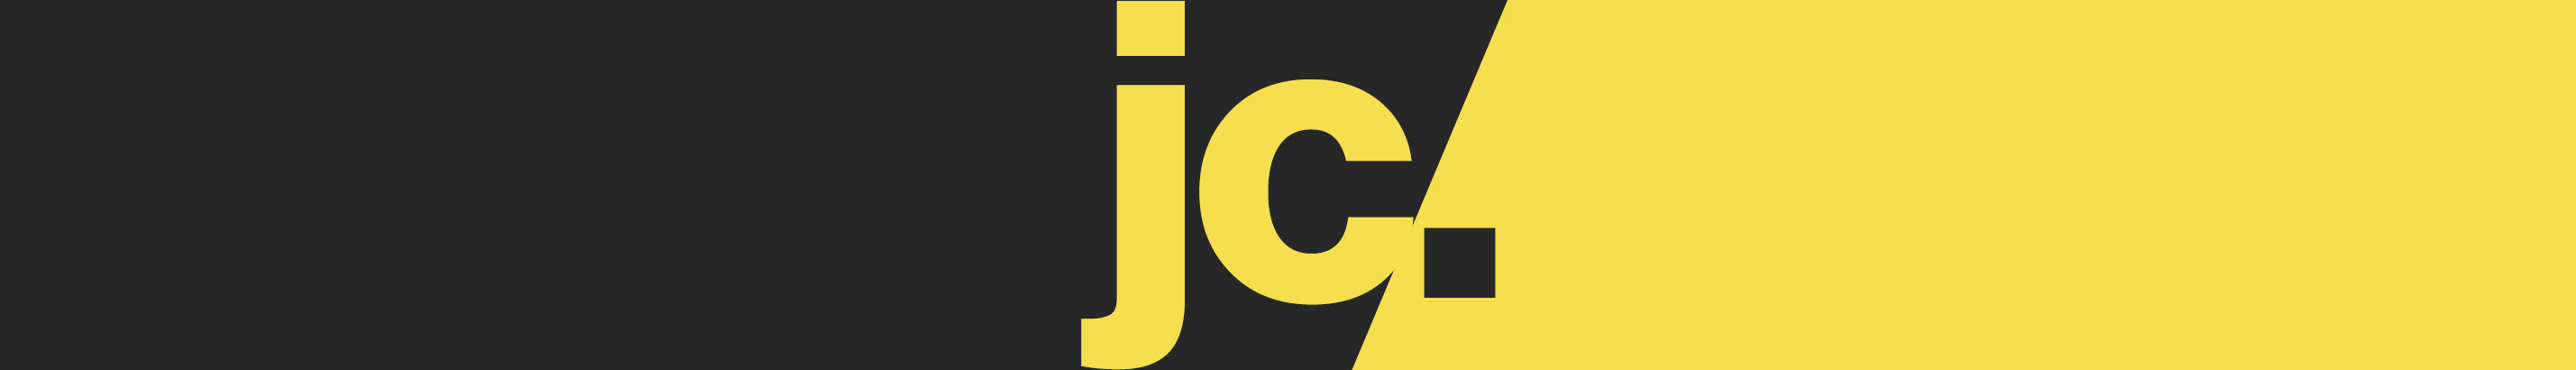 Julius Cano's profile banner